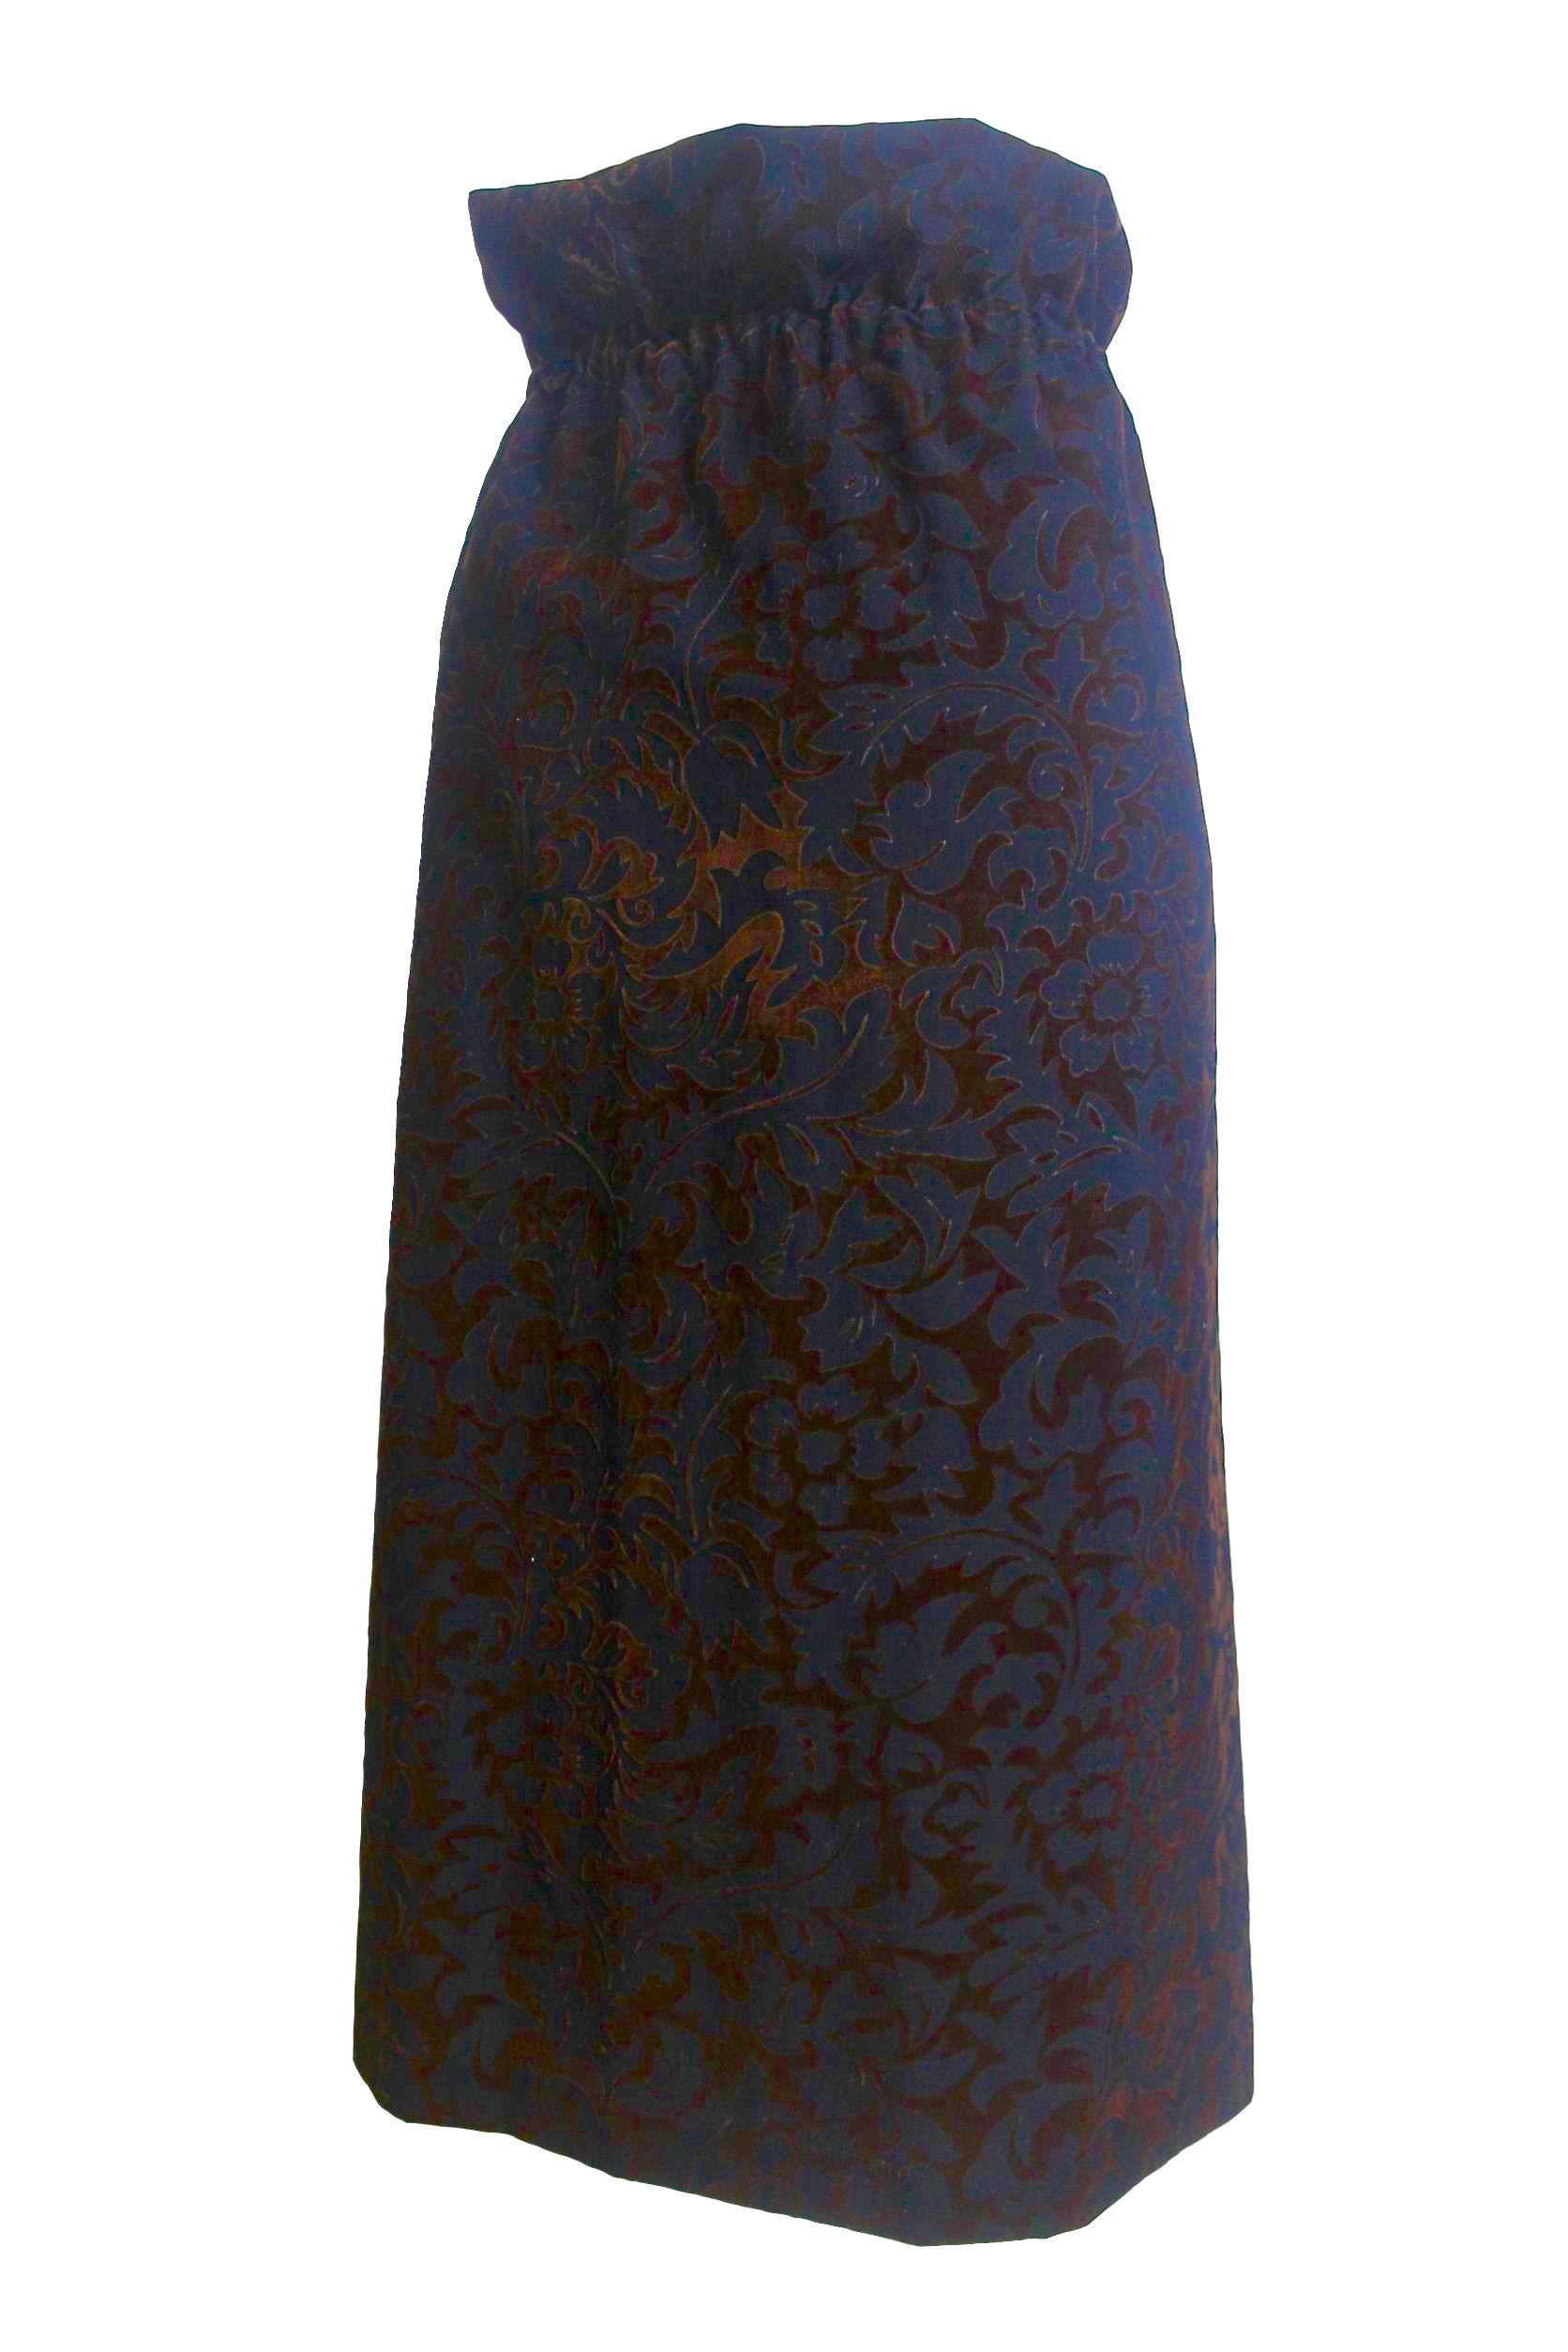 Black Comme des Garcons Flat Envelope Wool Skirt AD 1996 For Sale